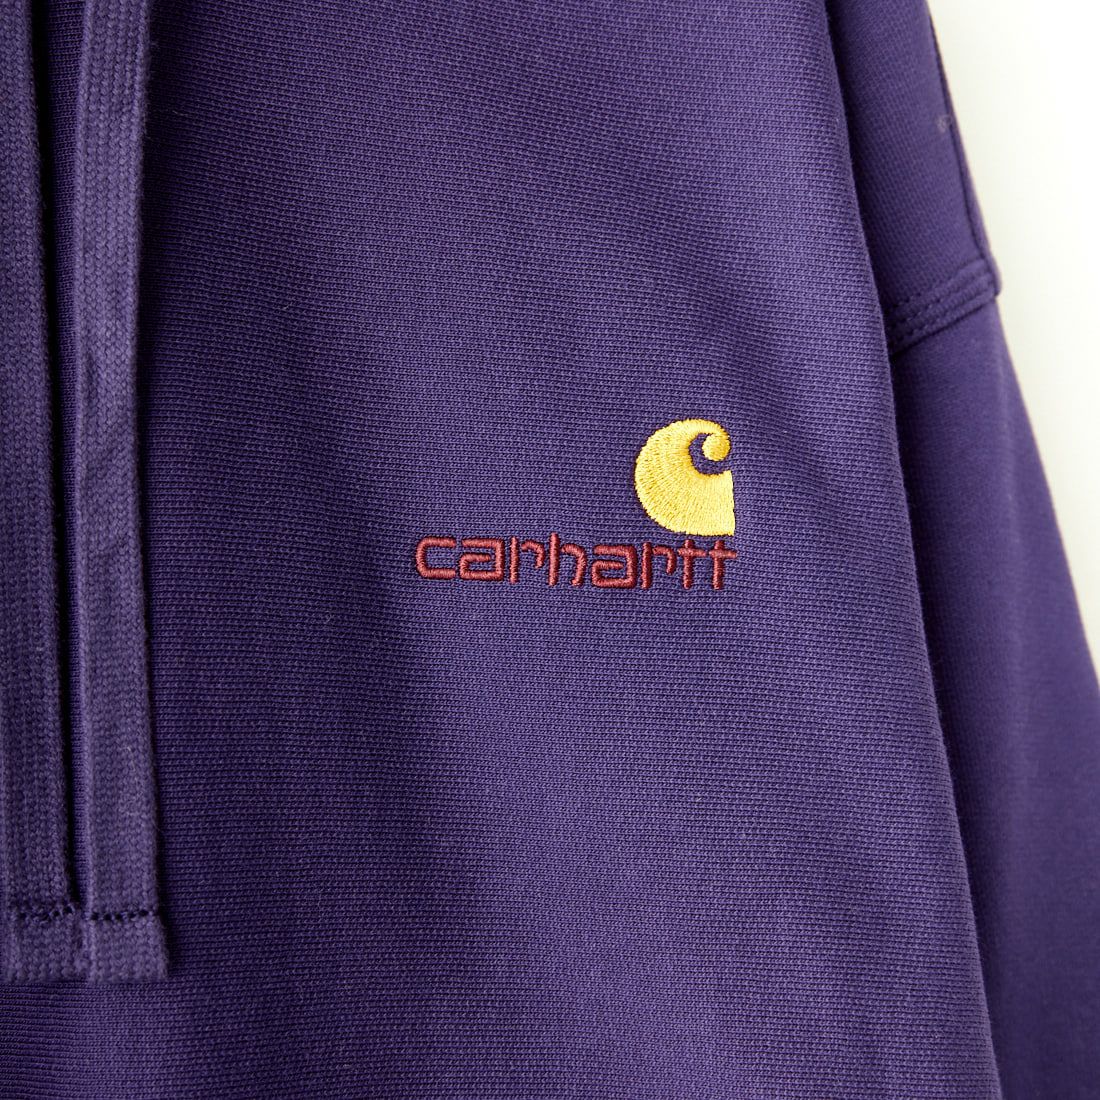 carhartt WIP [カーハートダブリューアイピー] フーデッドアメリカンスクリプトスウェットシャツ [I028279] CASSIS